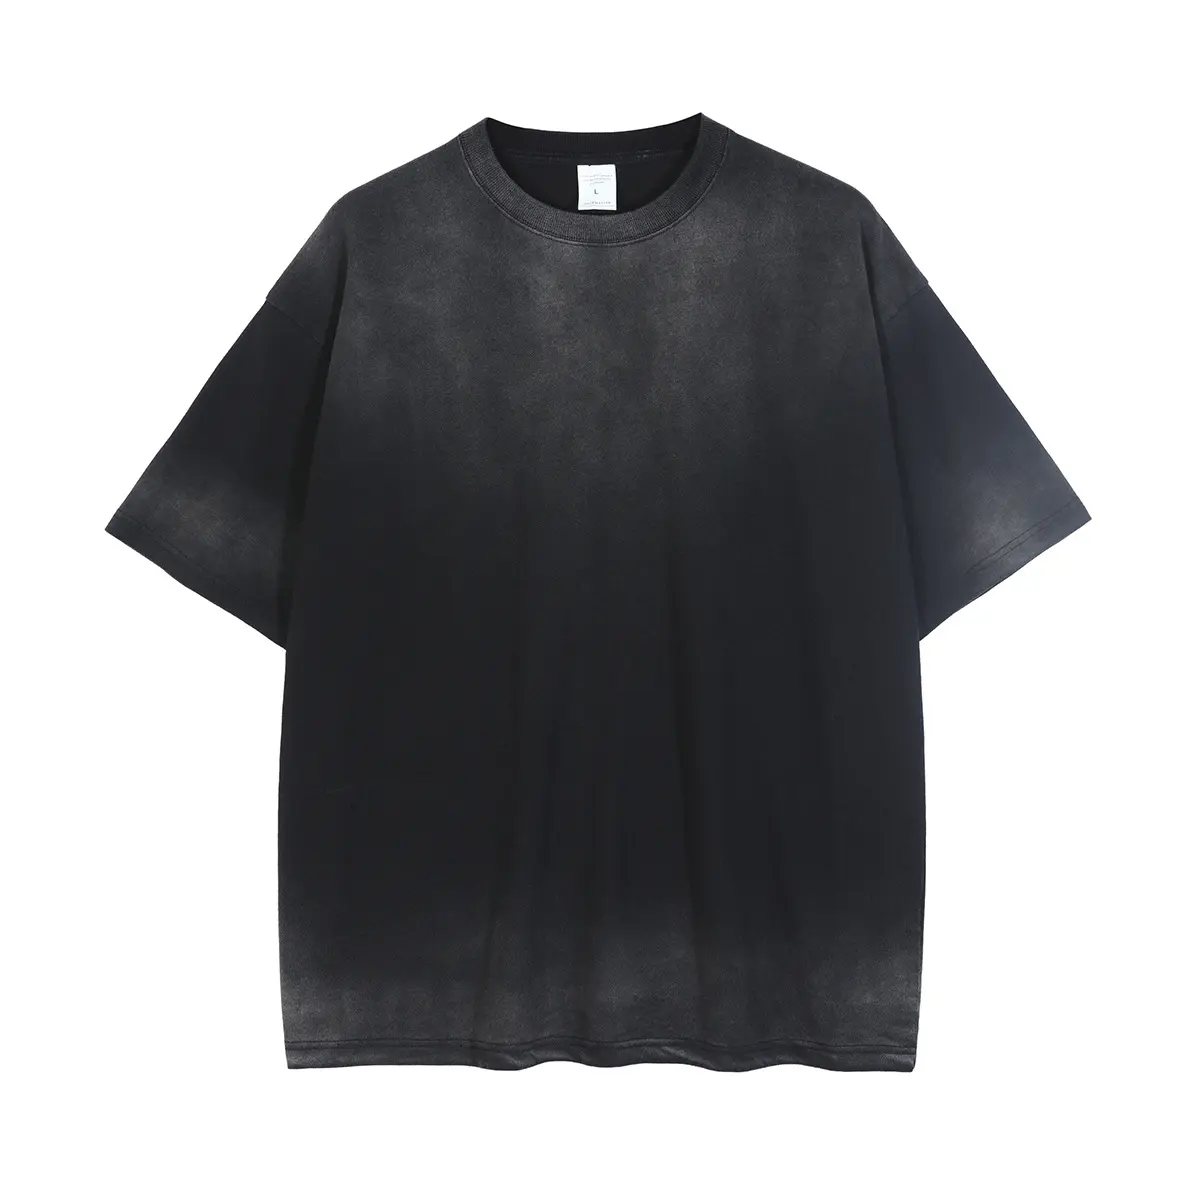 RTS 100% cotton with logo stone washed tshirt men custom old vintage plain blank acid wash black T-shirt 2021